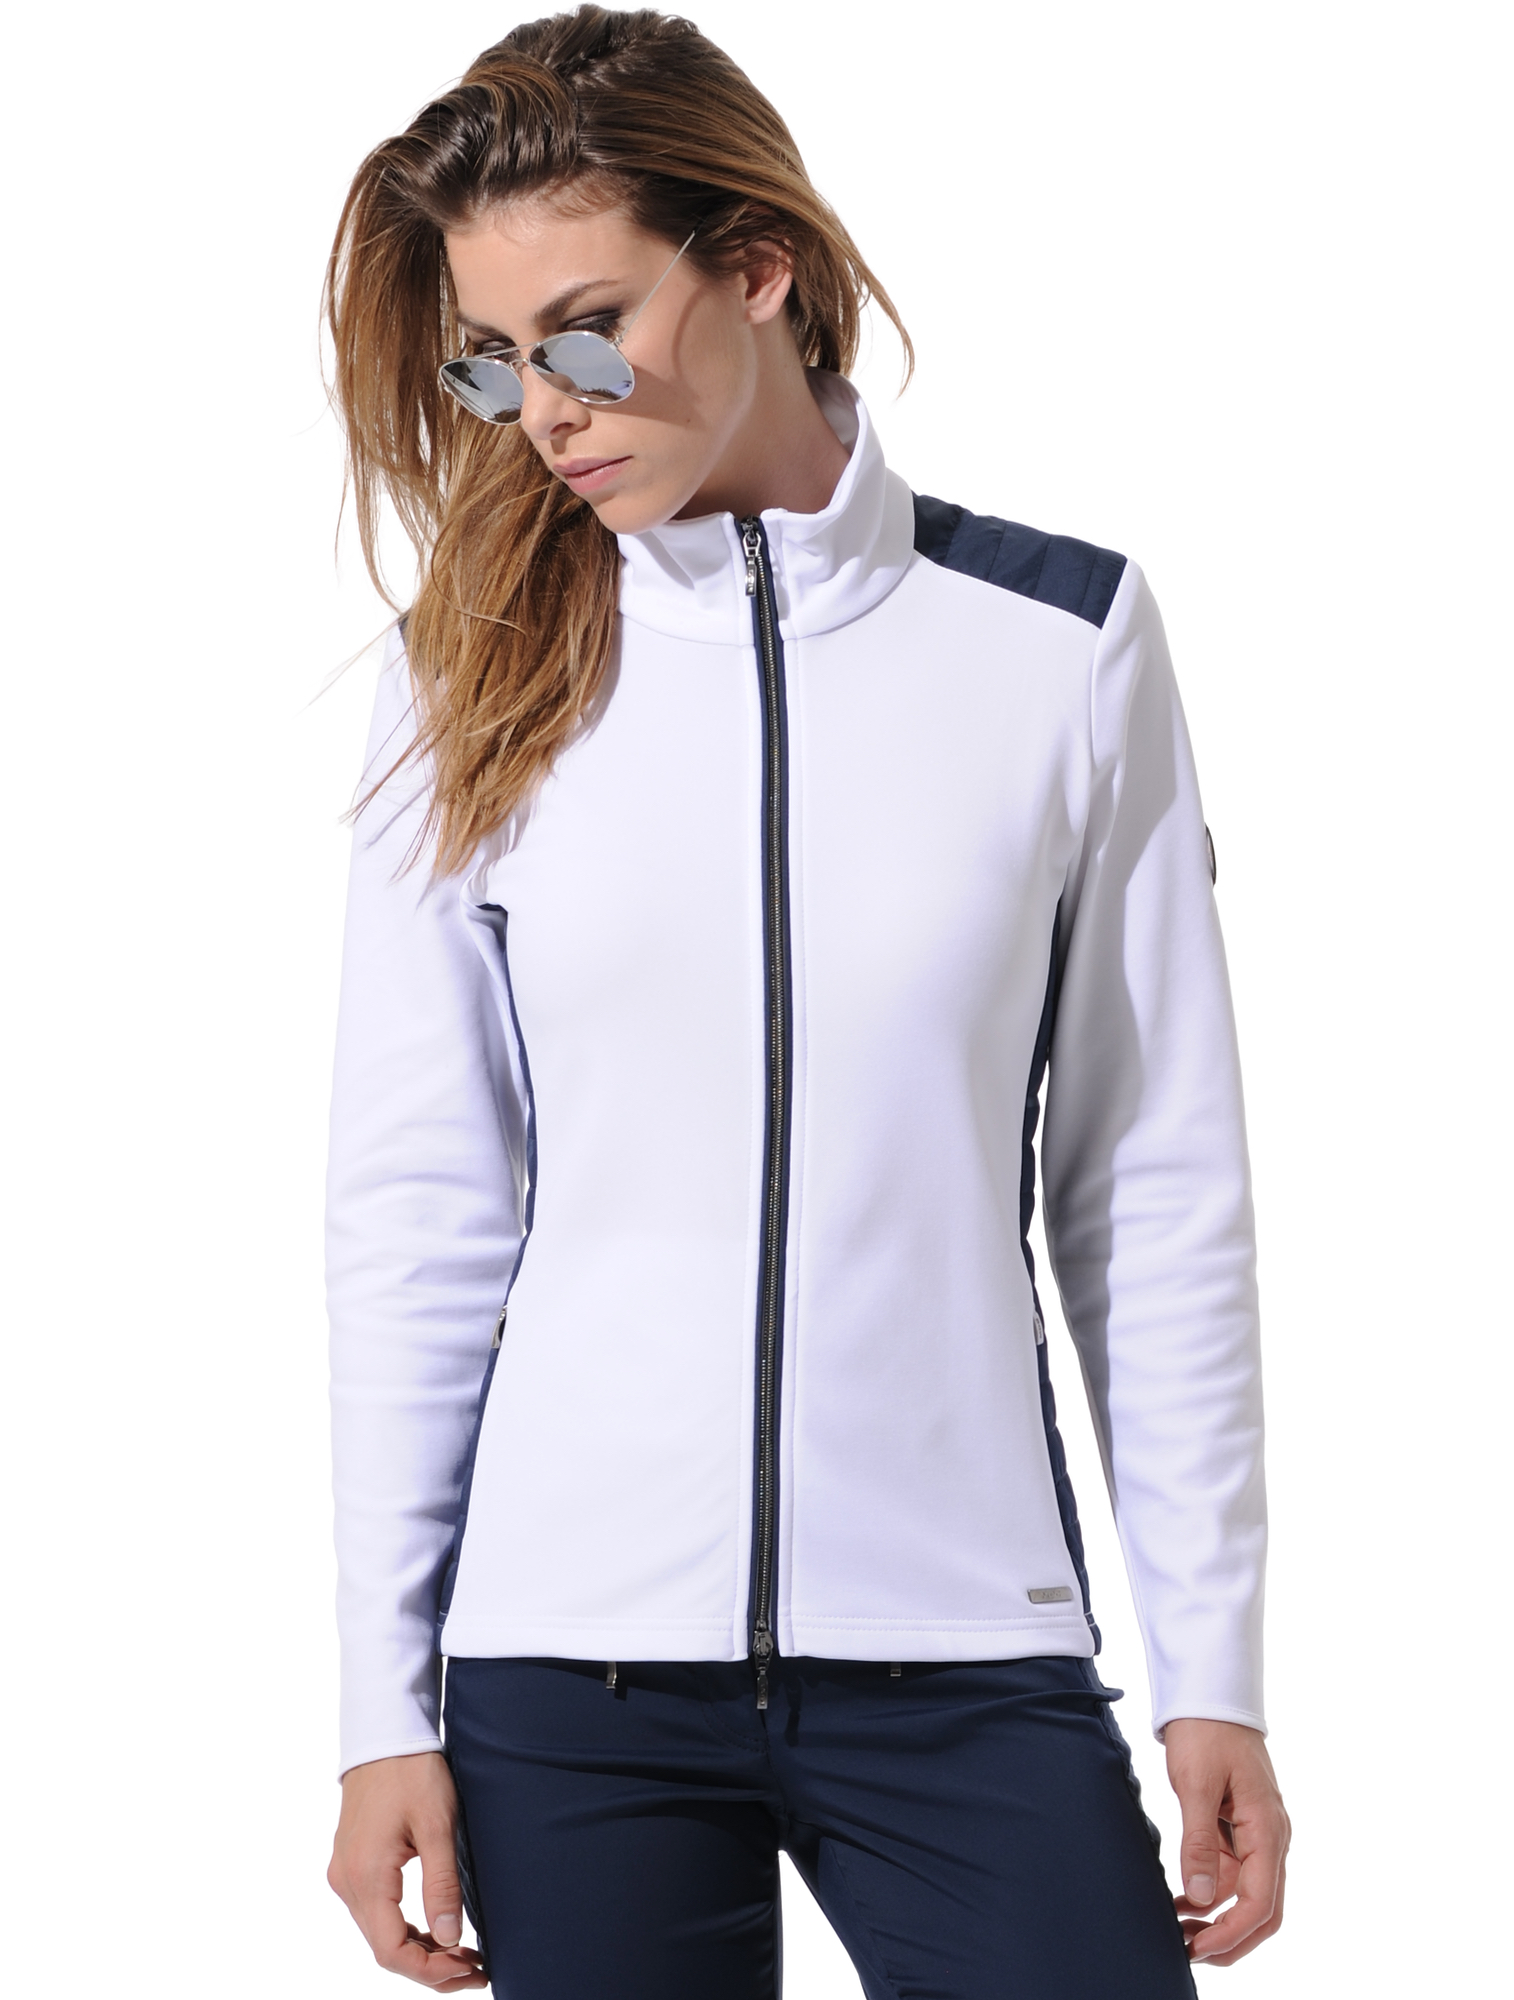 bondex jacket white/navy 